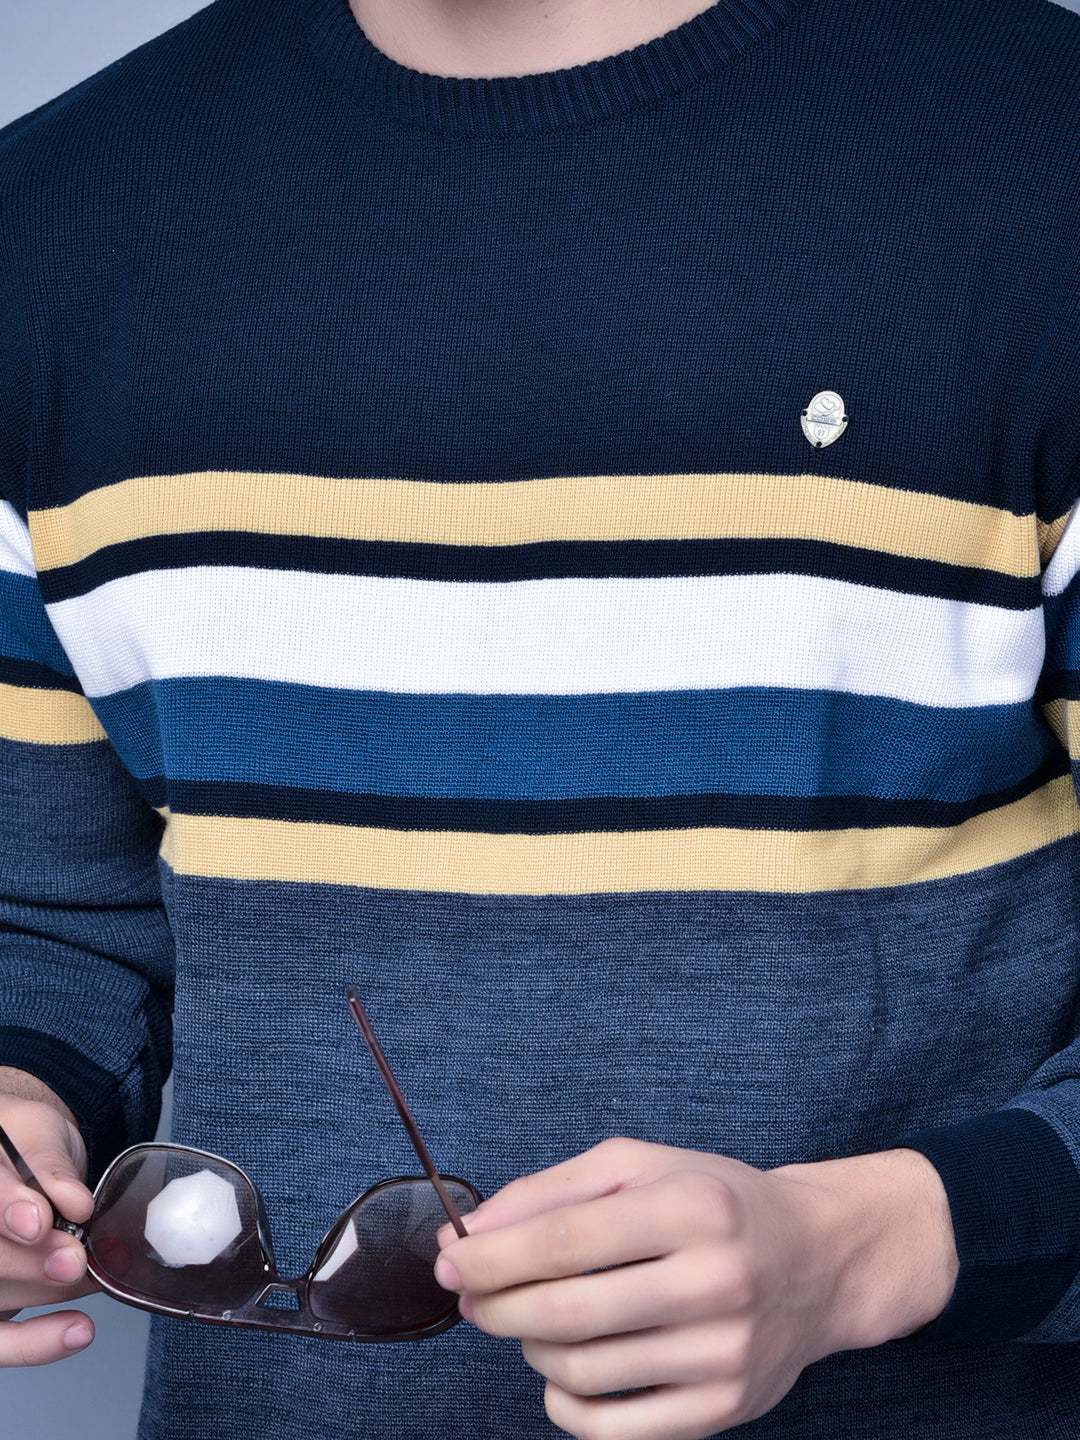 Cobb Navy Blue Striped Round Neck Sweater